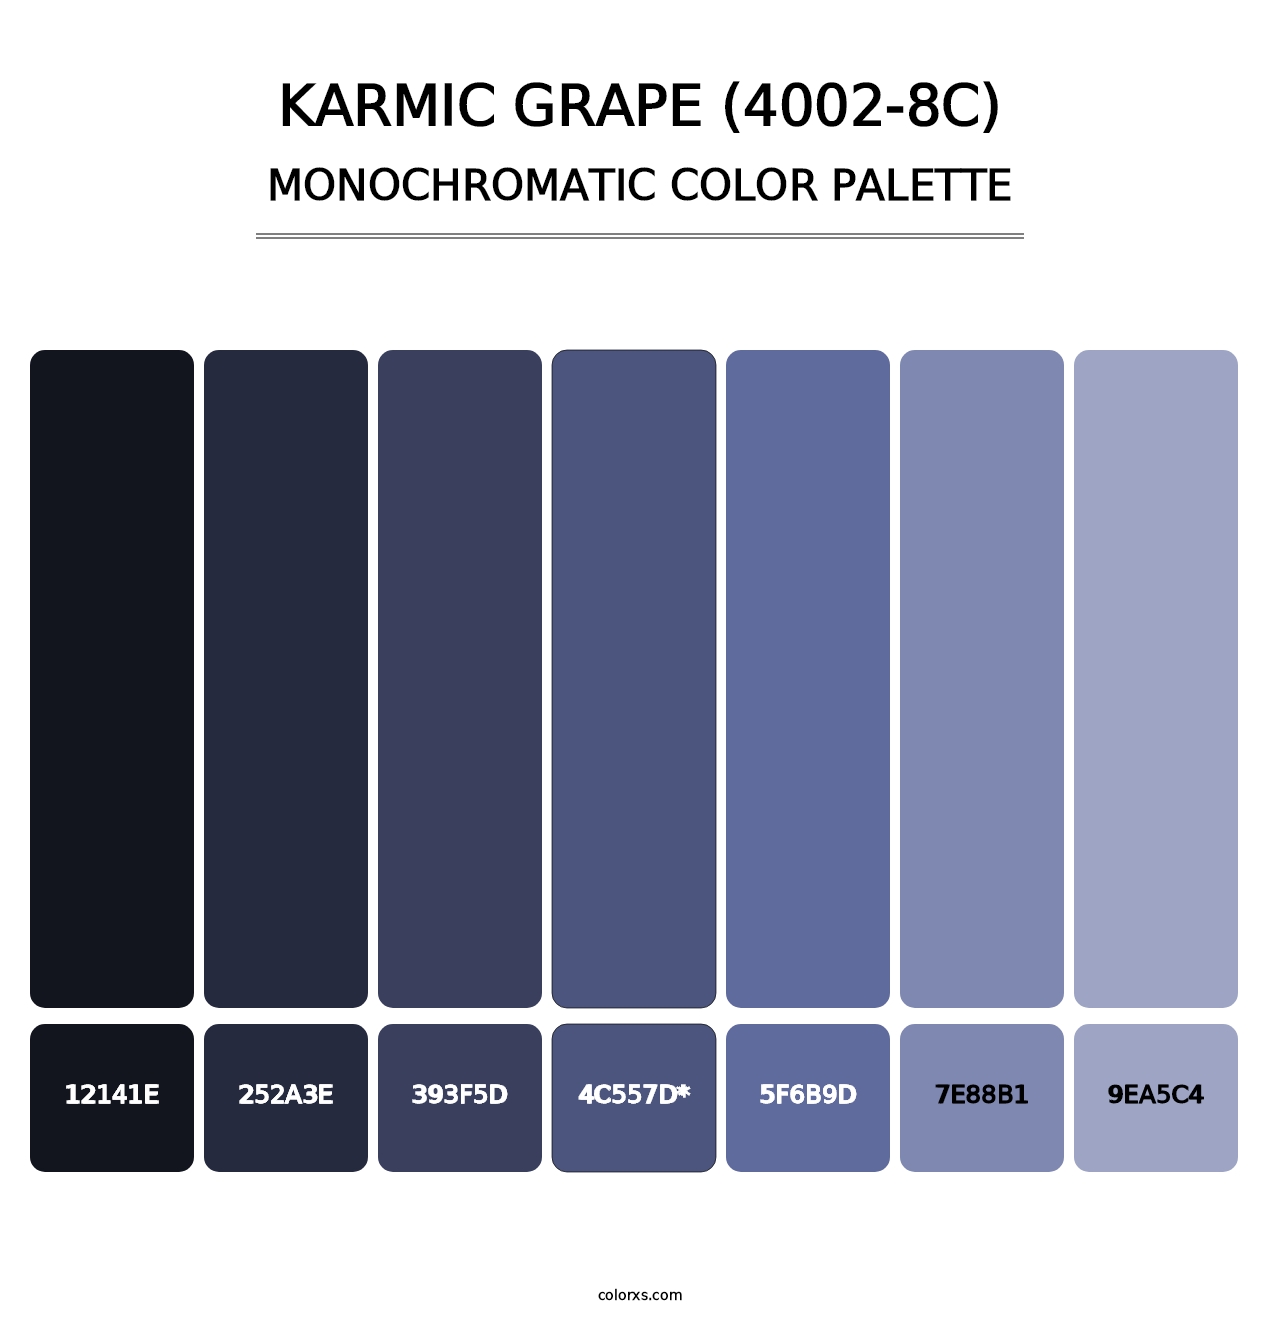 Karmic Grape (4002-8C) - Monochromatic Color Palette